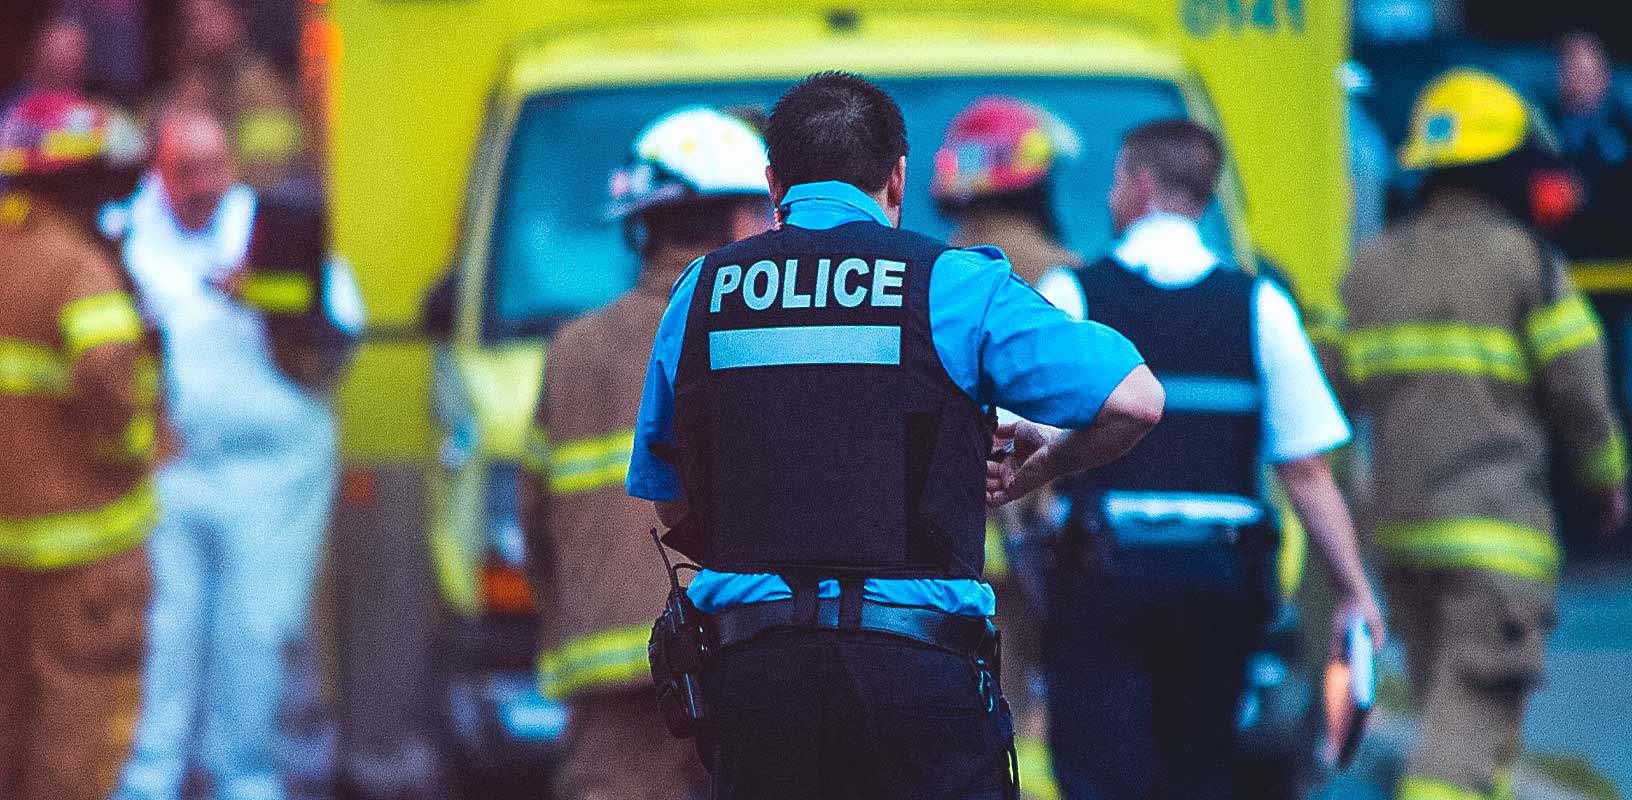 Imagen de la policía con vehículo de emergencia